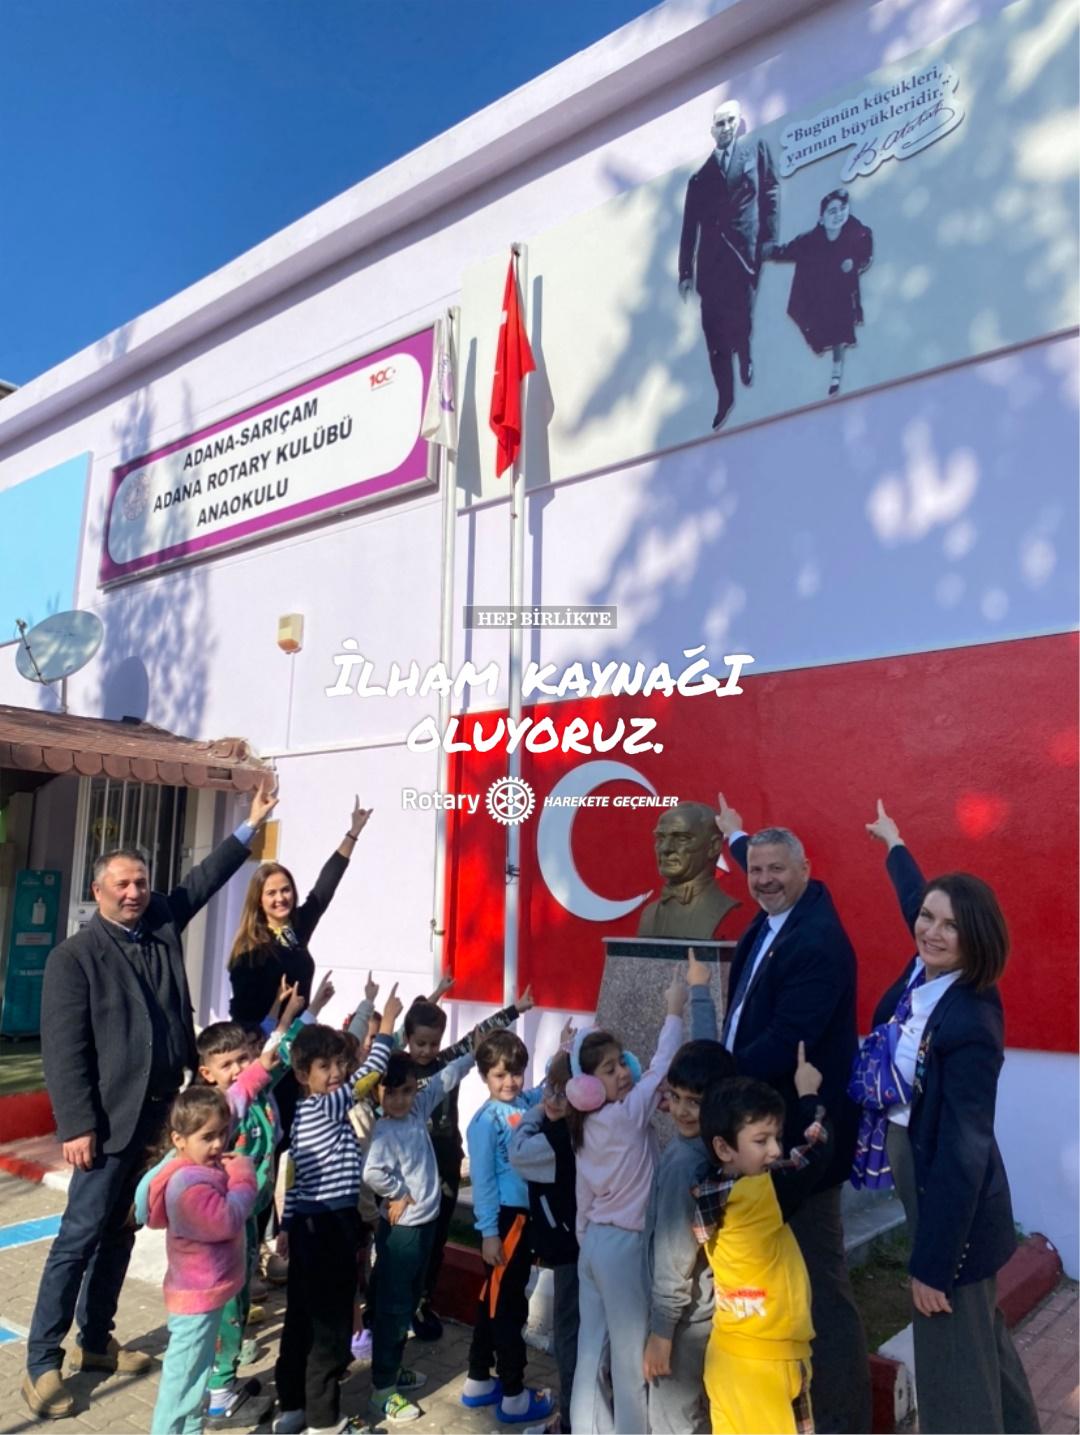 İncirlik Adana Rotary Kulübü Anaokulu Dış Duvarına “Atatürk ve Küçük Ülkü” Fotoğrafı Montajı